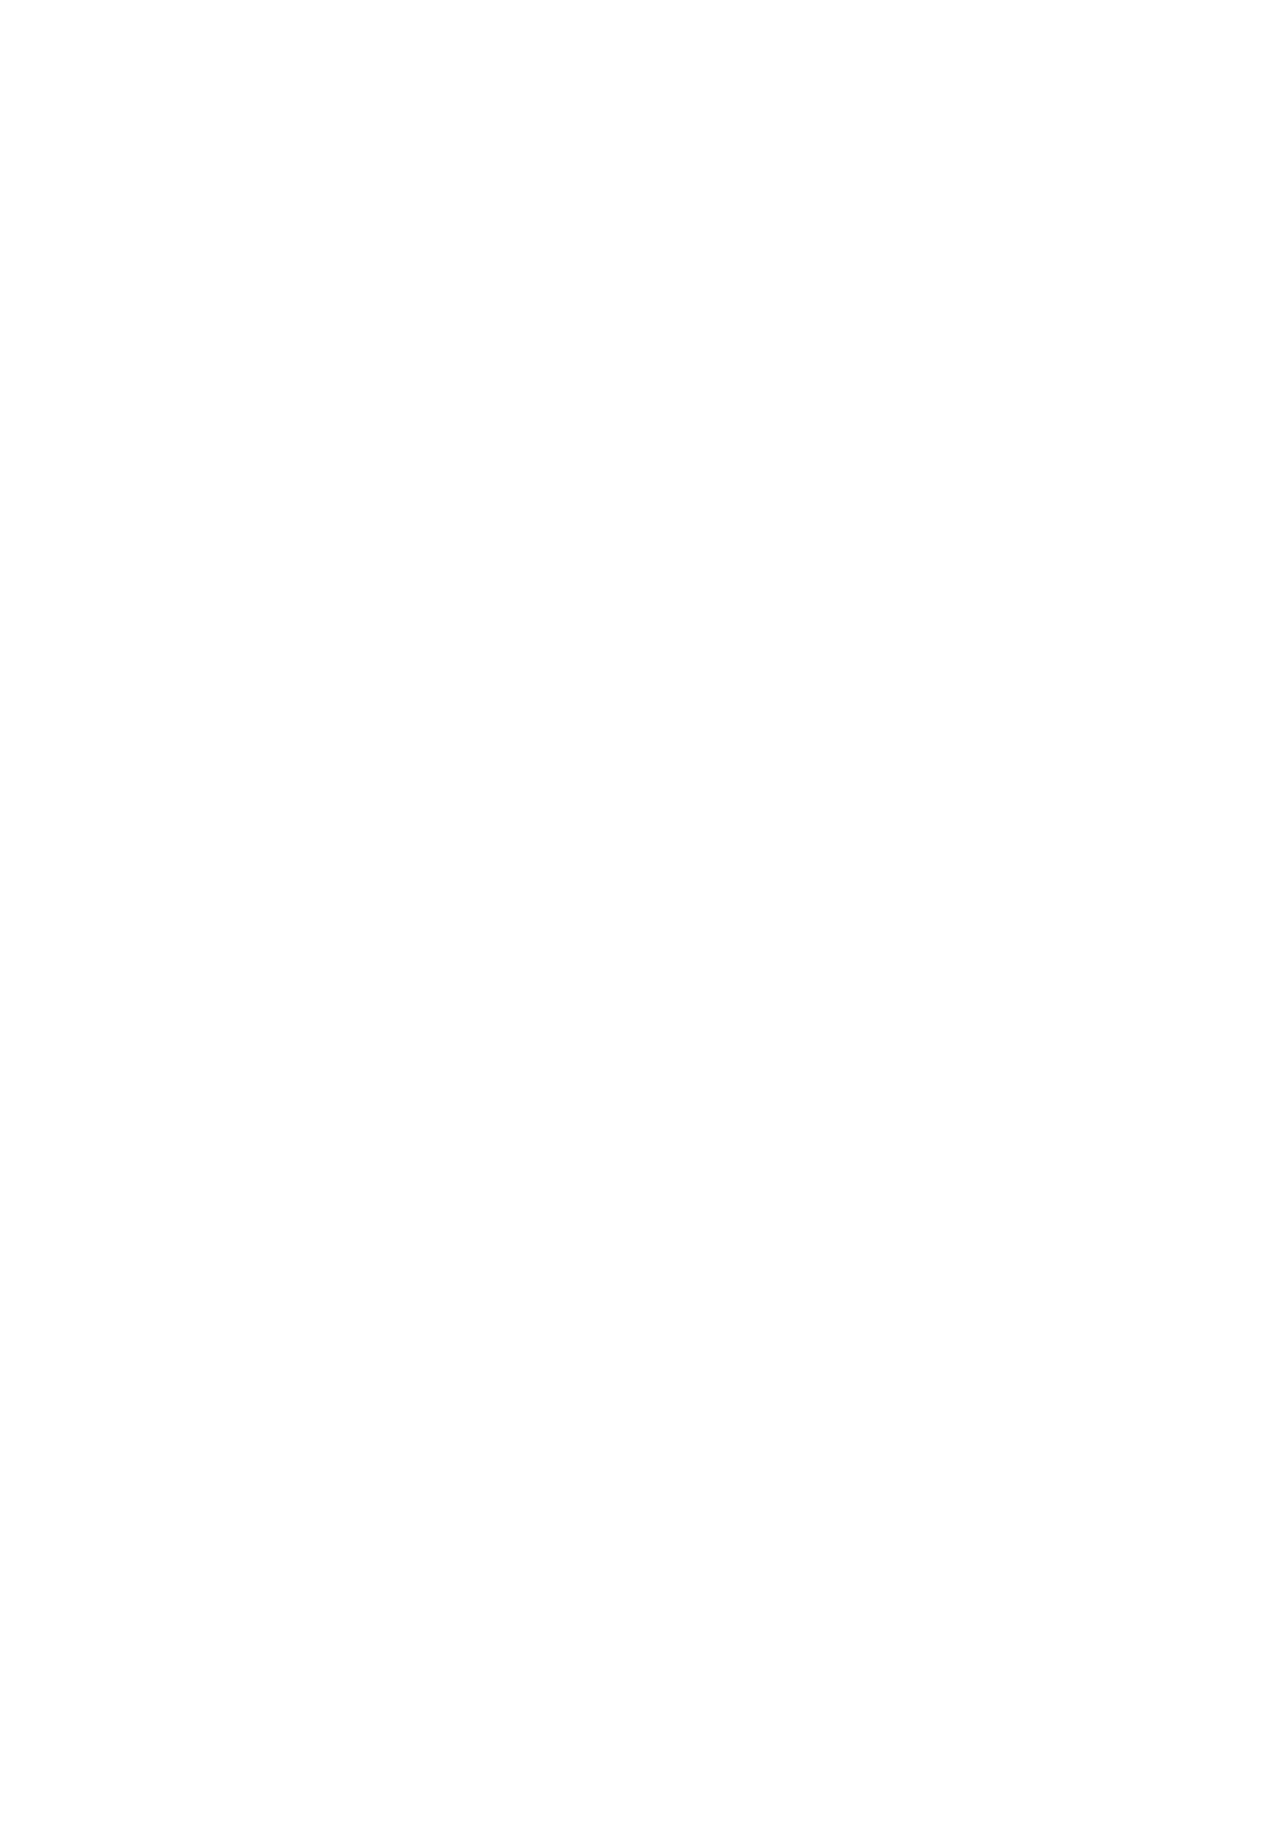 [九十九里ニャ獣会 (よろず)] ロクでなし提督と禁忌夜戦～第二四駆逐隊エッチ漫画合同～ (艦隊これくしょん -艦これ-) [DL版]